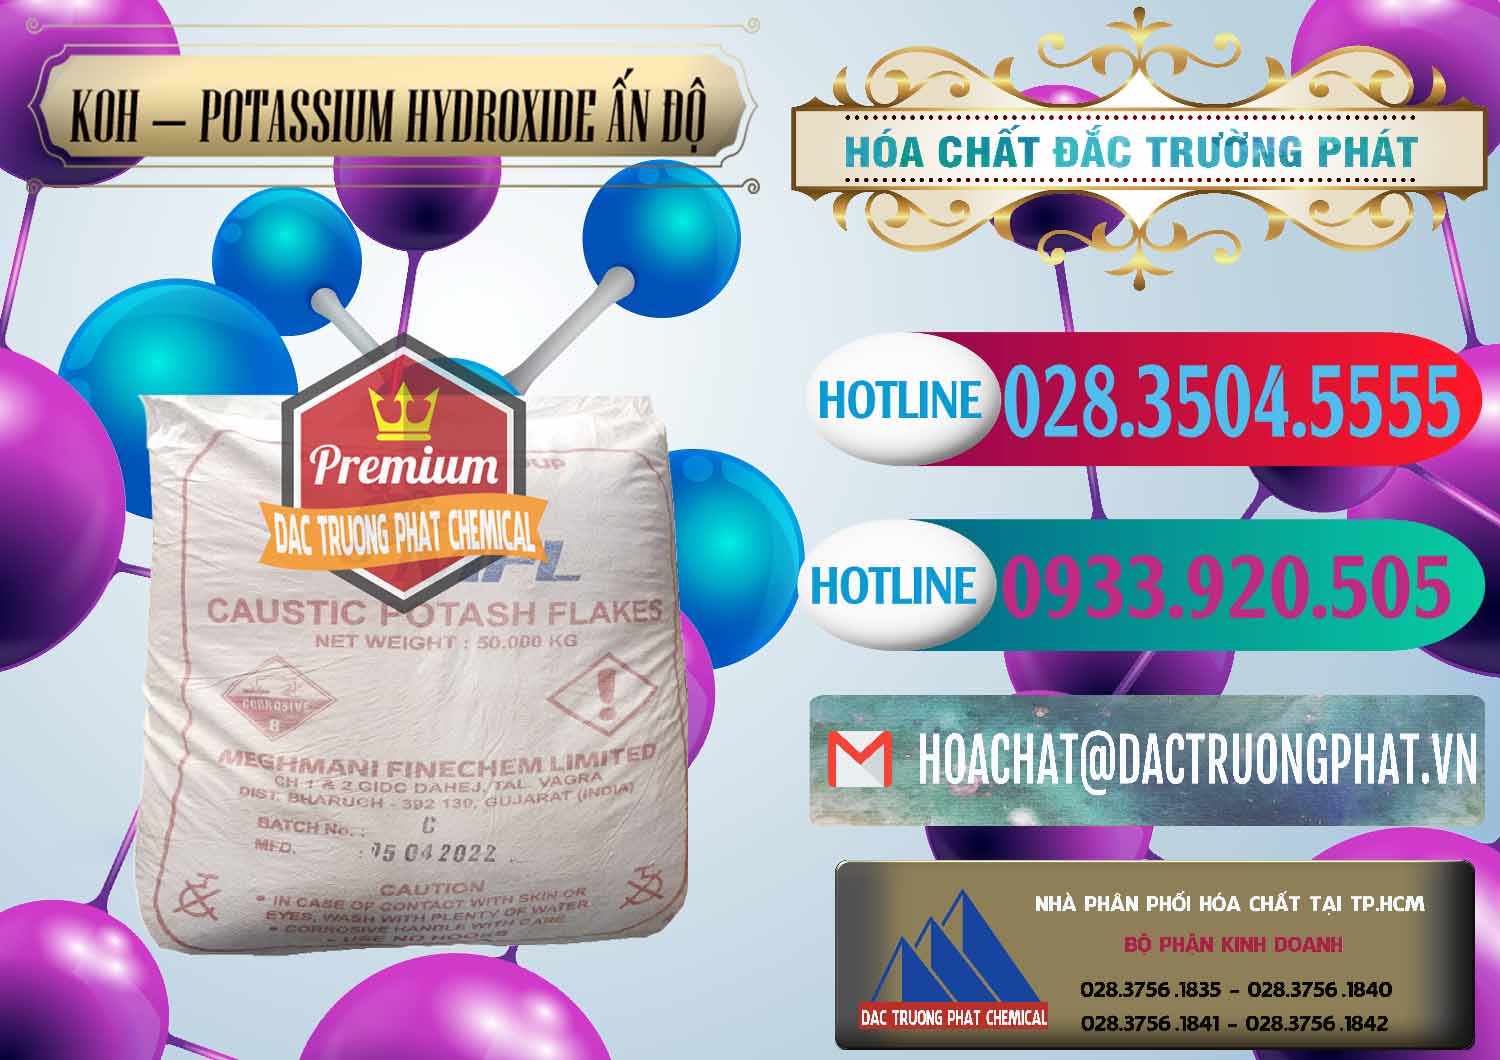 Cty kinh doanh - bán KOH ( 90%) – Potassium Hydroxide Ấn Độ India - 0352 - Công ty phân phối & cung ứng hóa chất tại TP.HCM - truongphat.vn